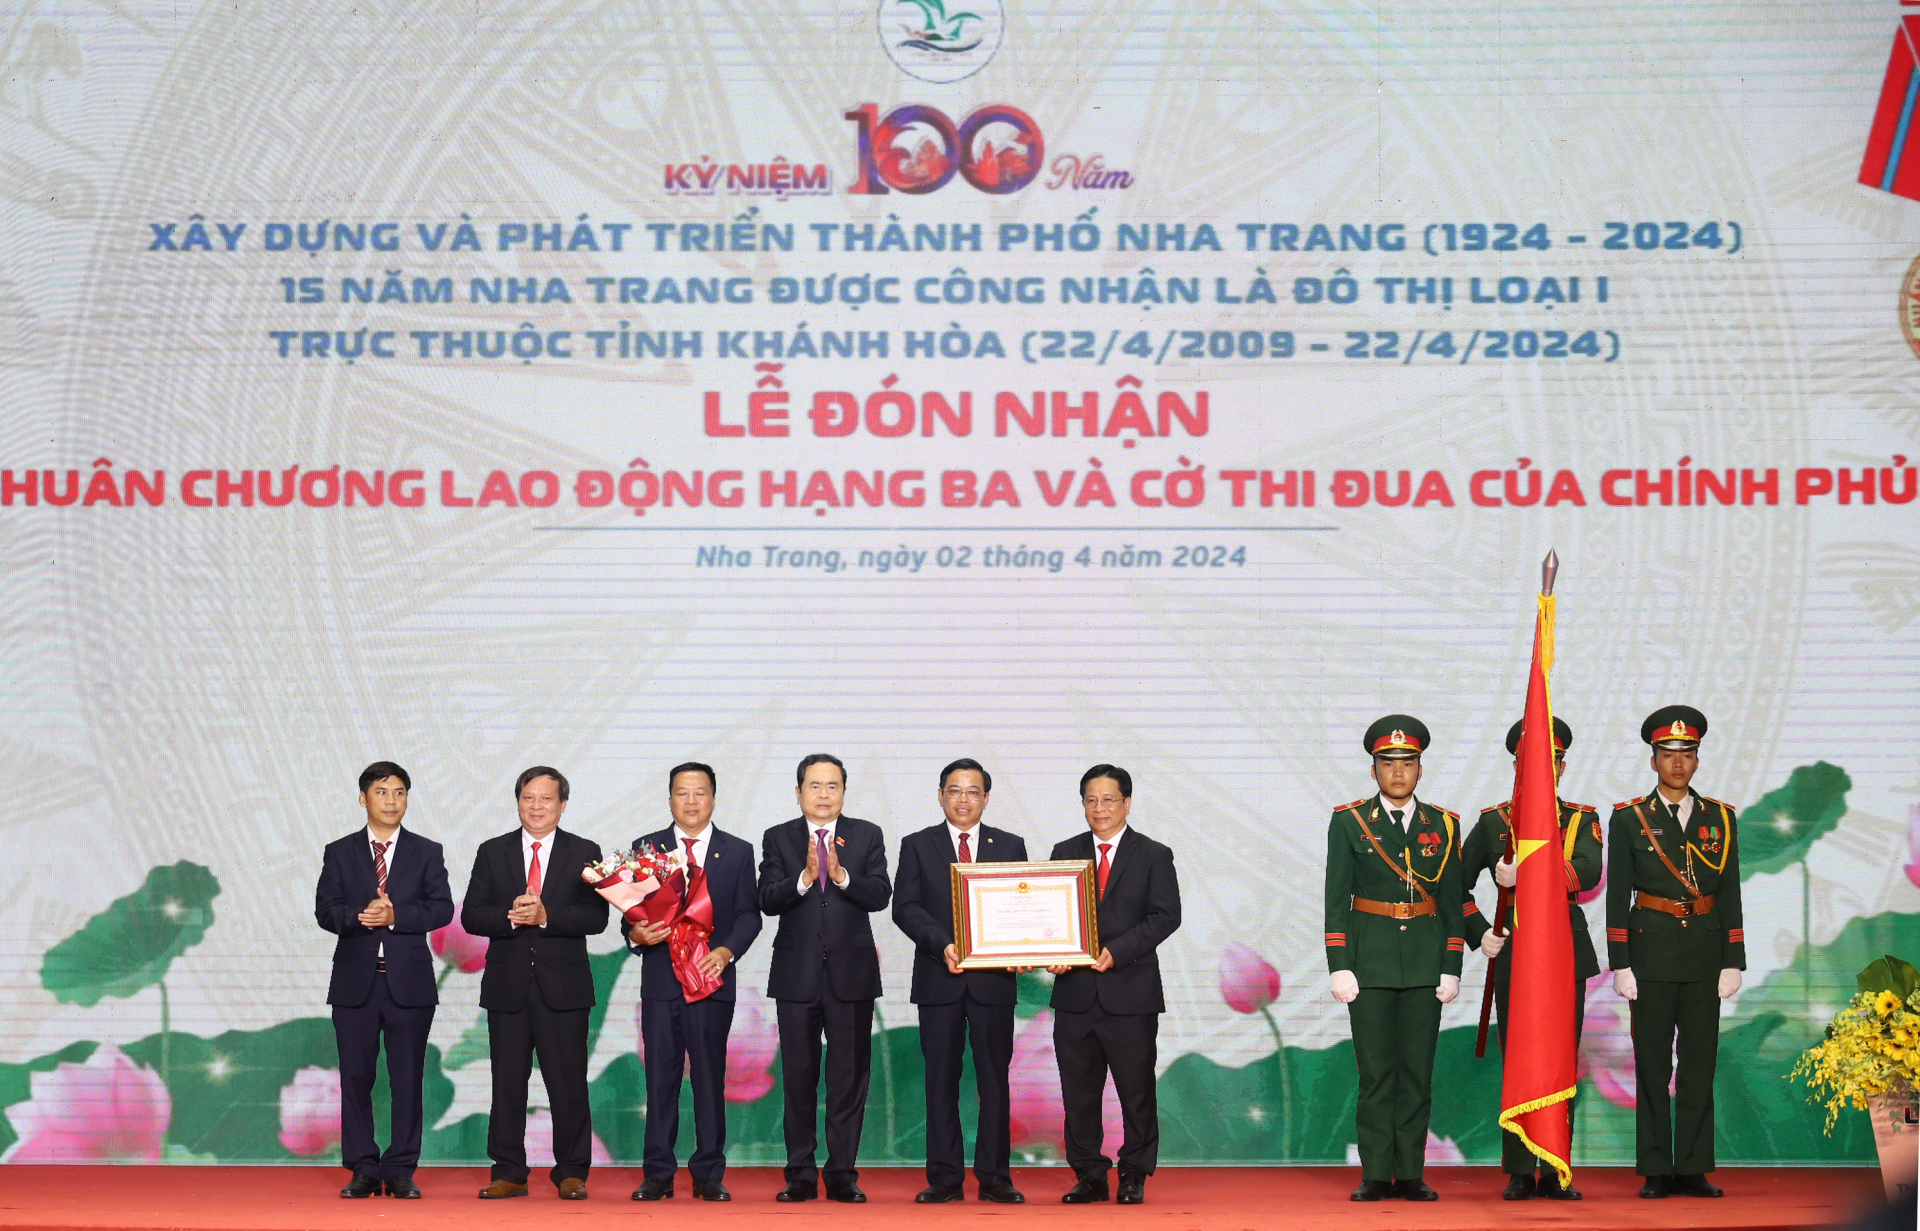 Lễ kỷ niệm 100 năm xây dựng và phát triển TP. Nha Trang